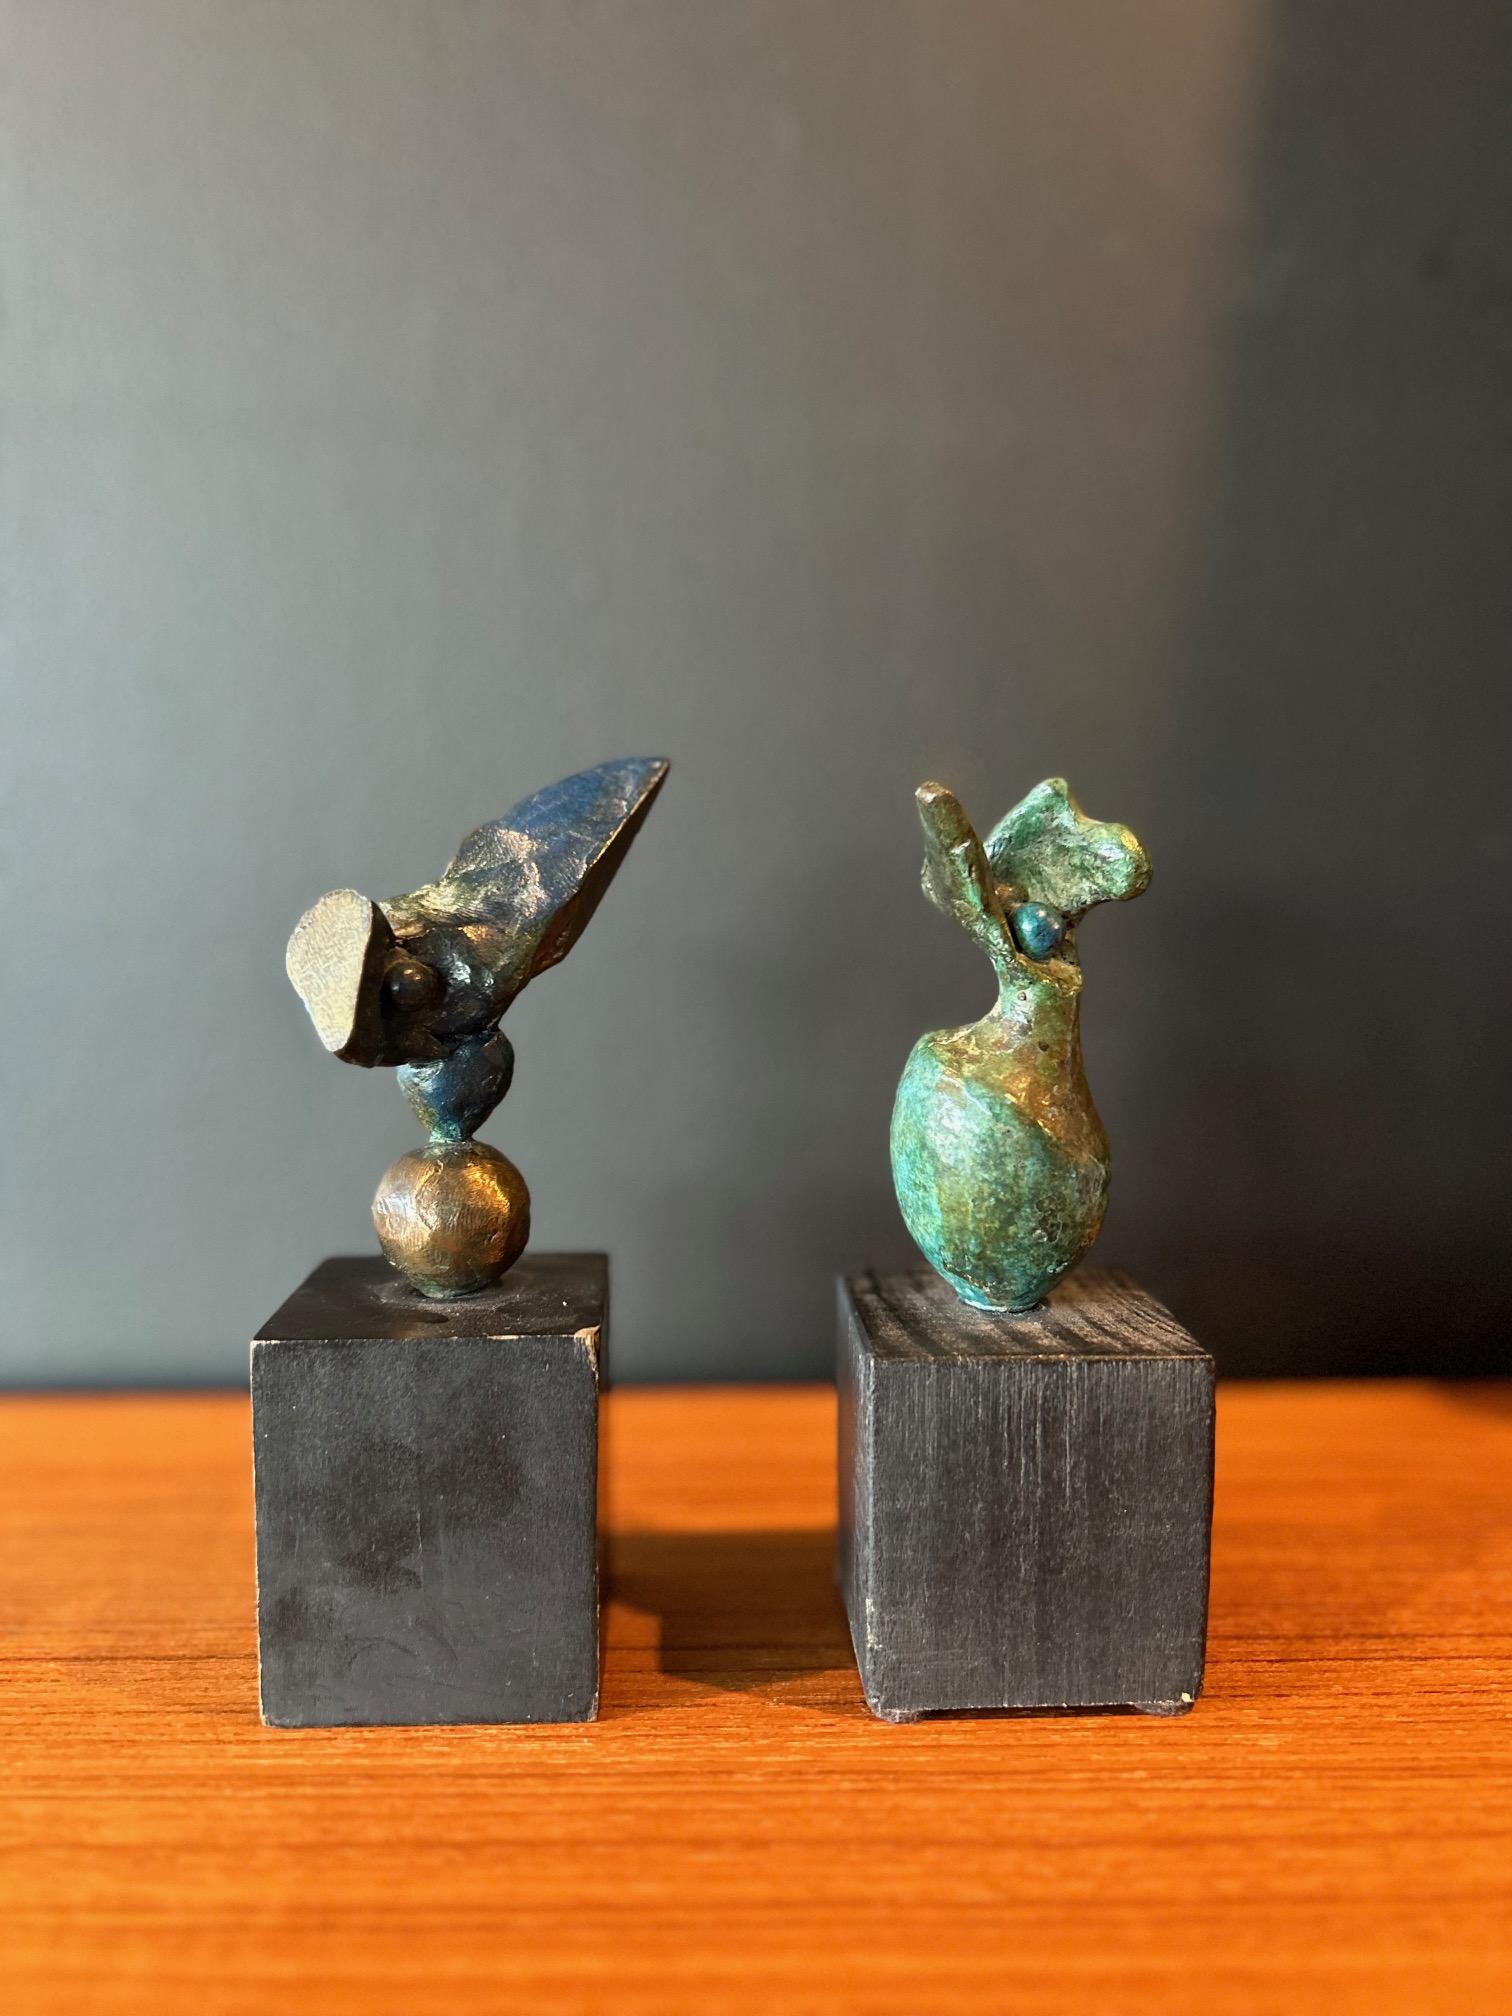 Ensemble de deux petites sculptures abstraites en bronze dans des tons sarcelle/turquoise profonds de l'artiste Donald Locke, montées sur des bases carrées en bois noir. L'une des formes organiques est ponctuée de formes présentant une épissure